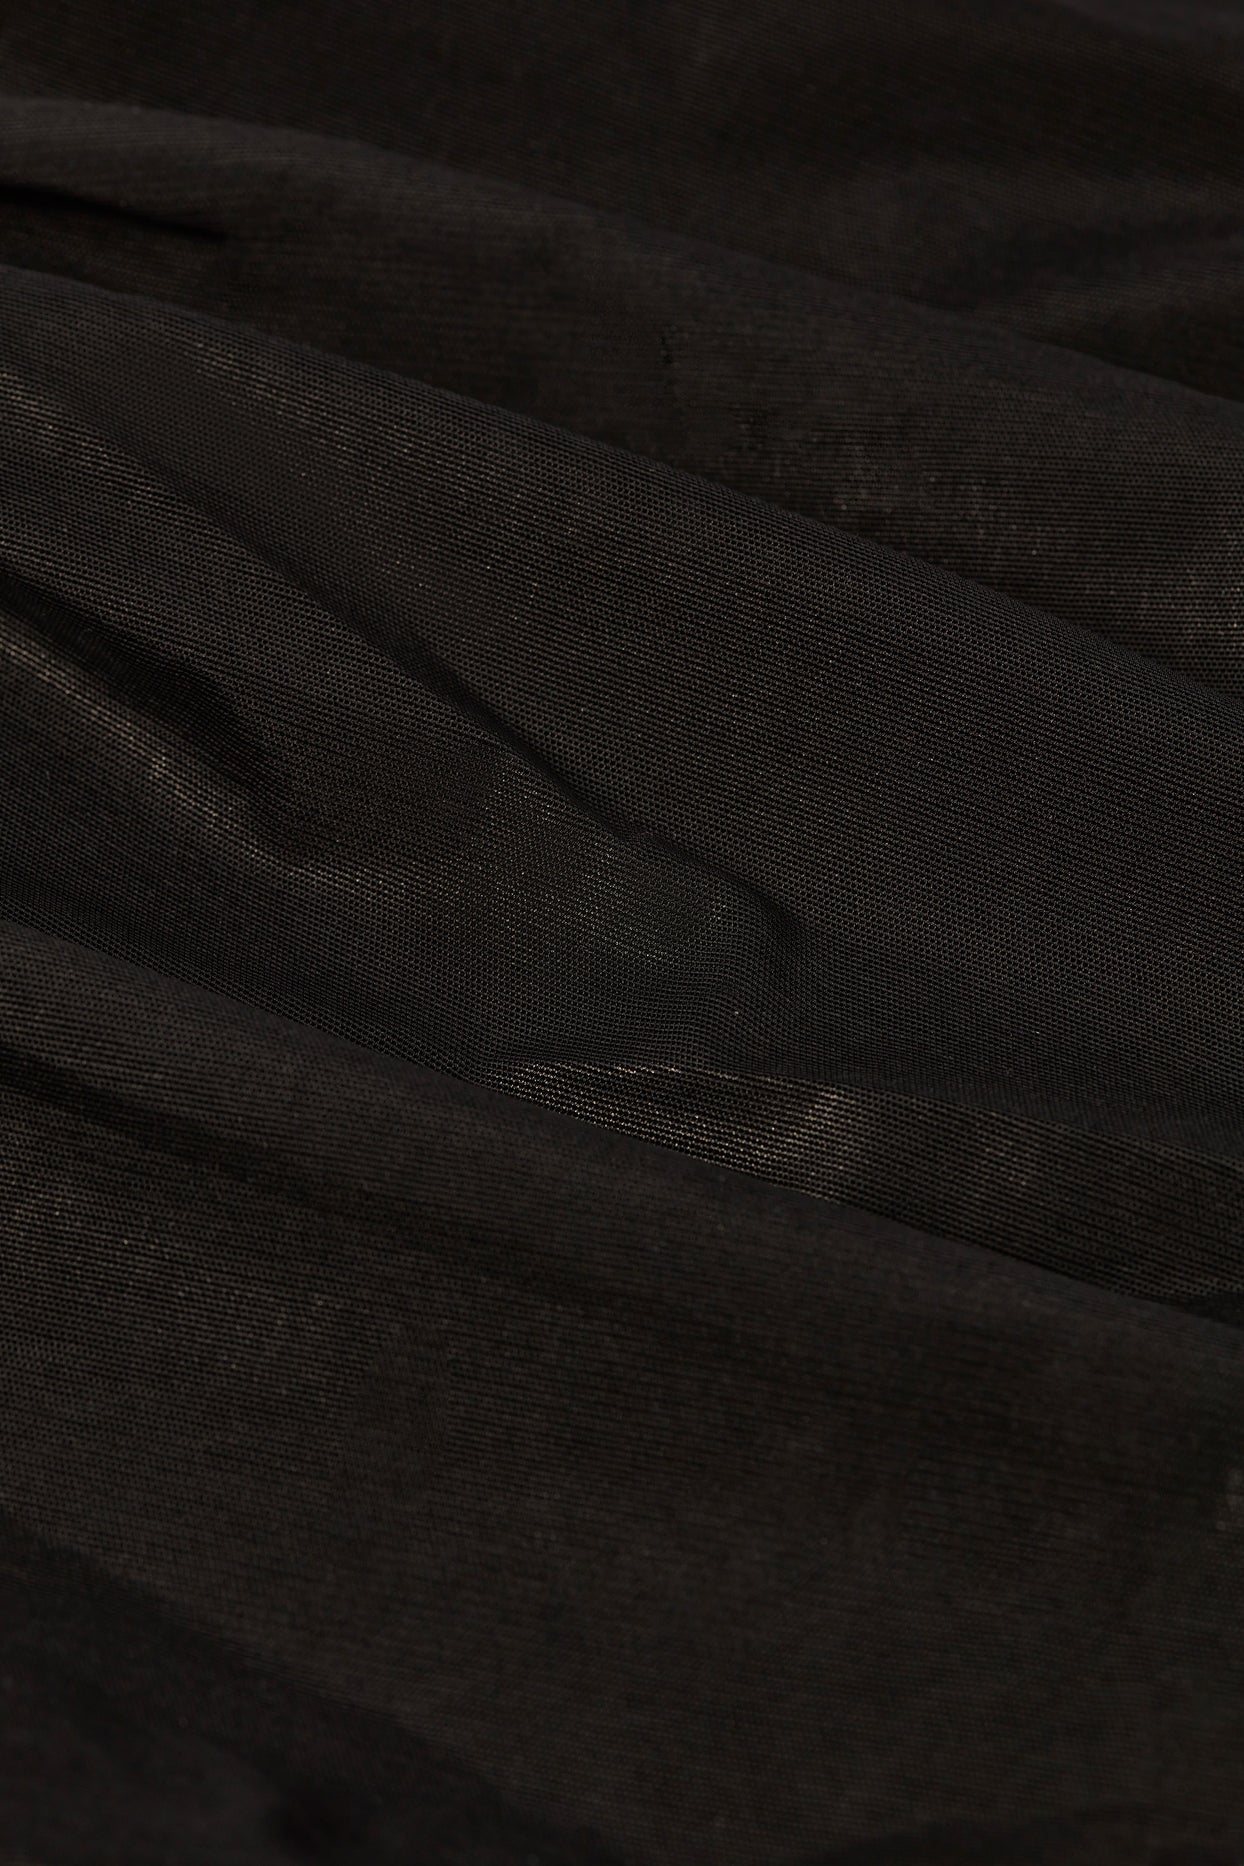 Grand pantalon évasé taille basse à volants métallisés en noir